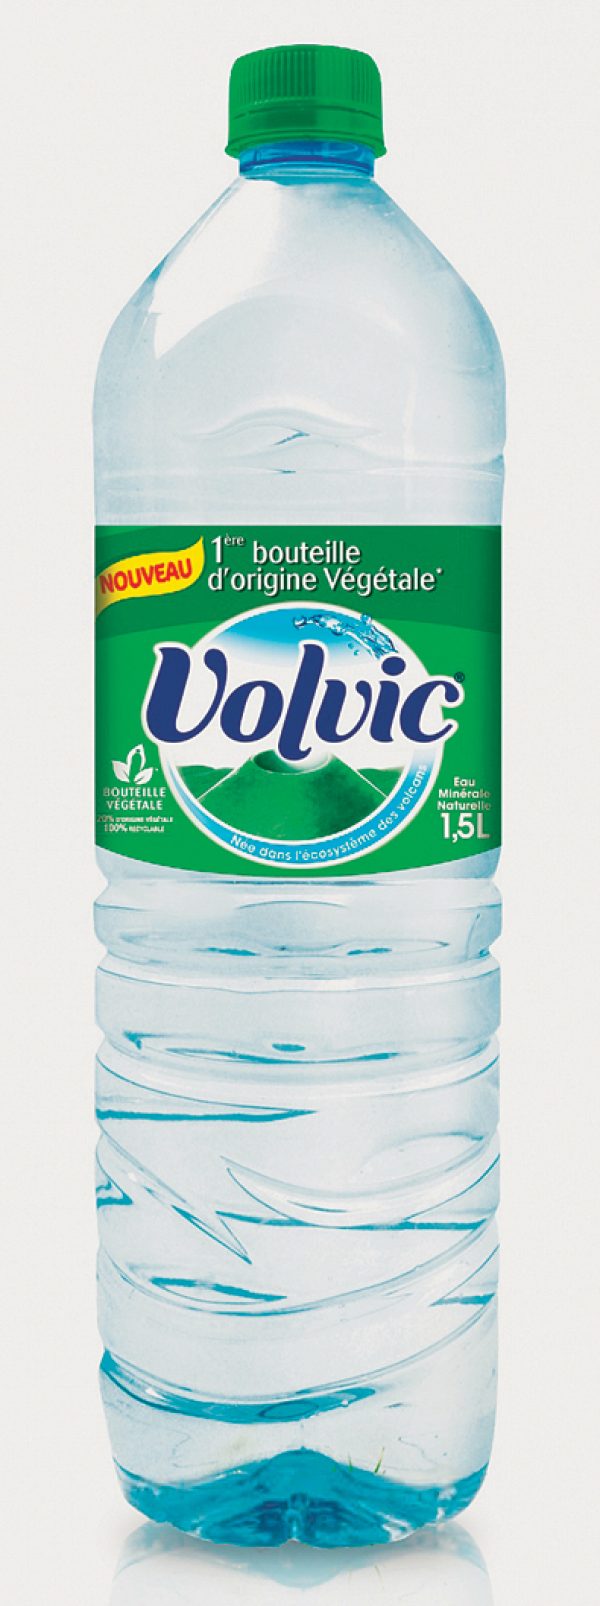 La nouvelle bouteille d’eau Volvic.